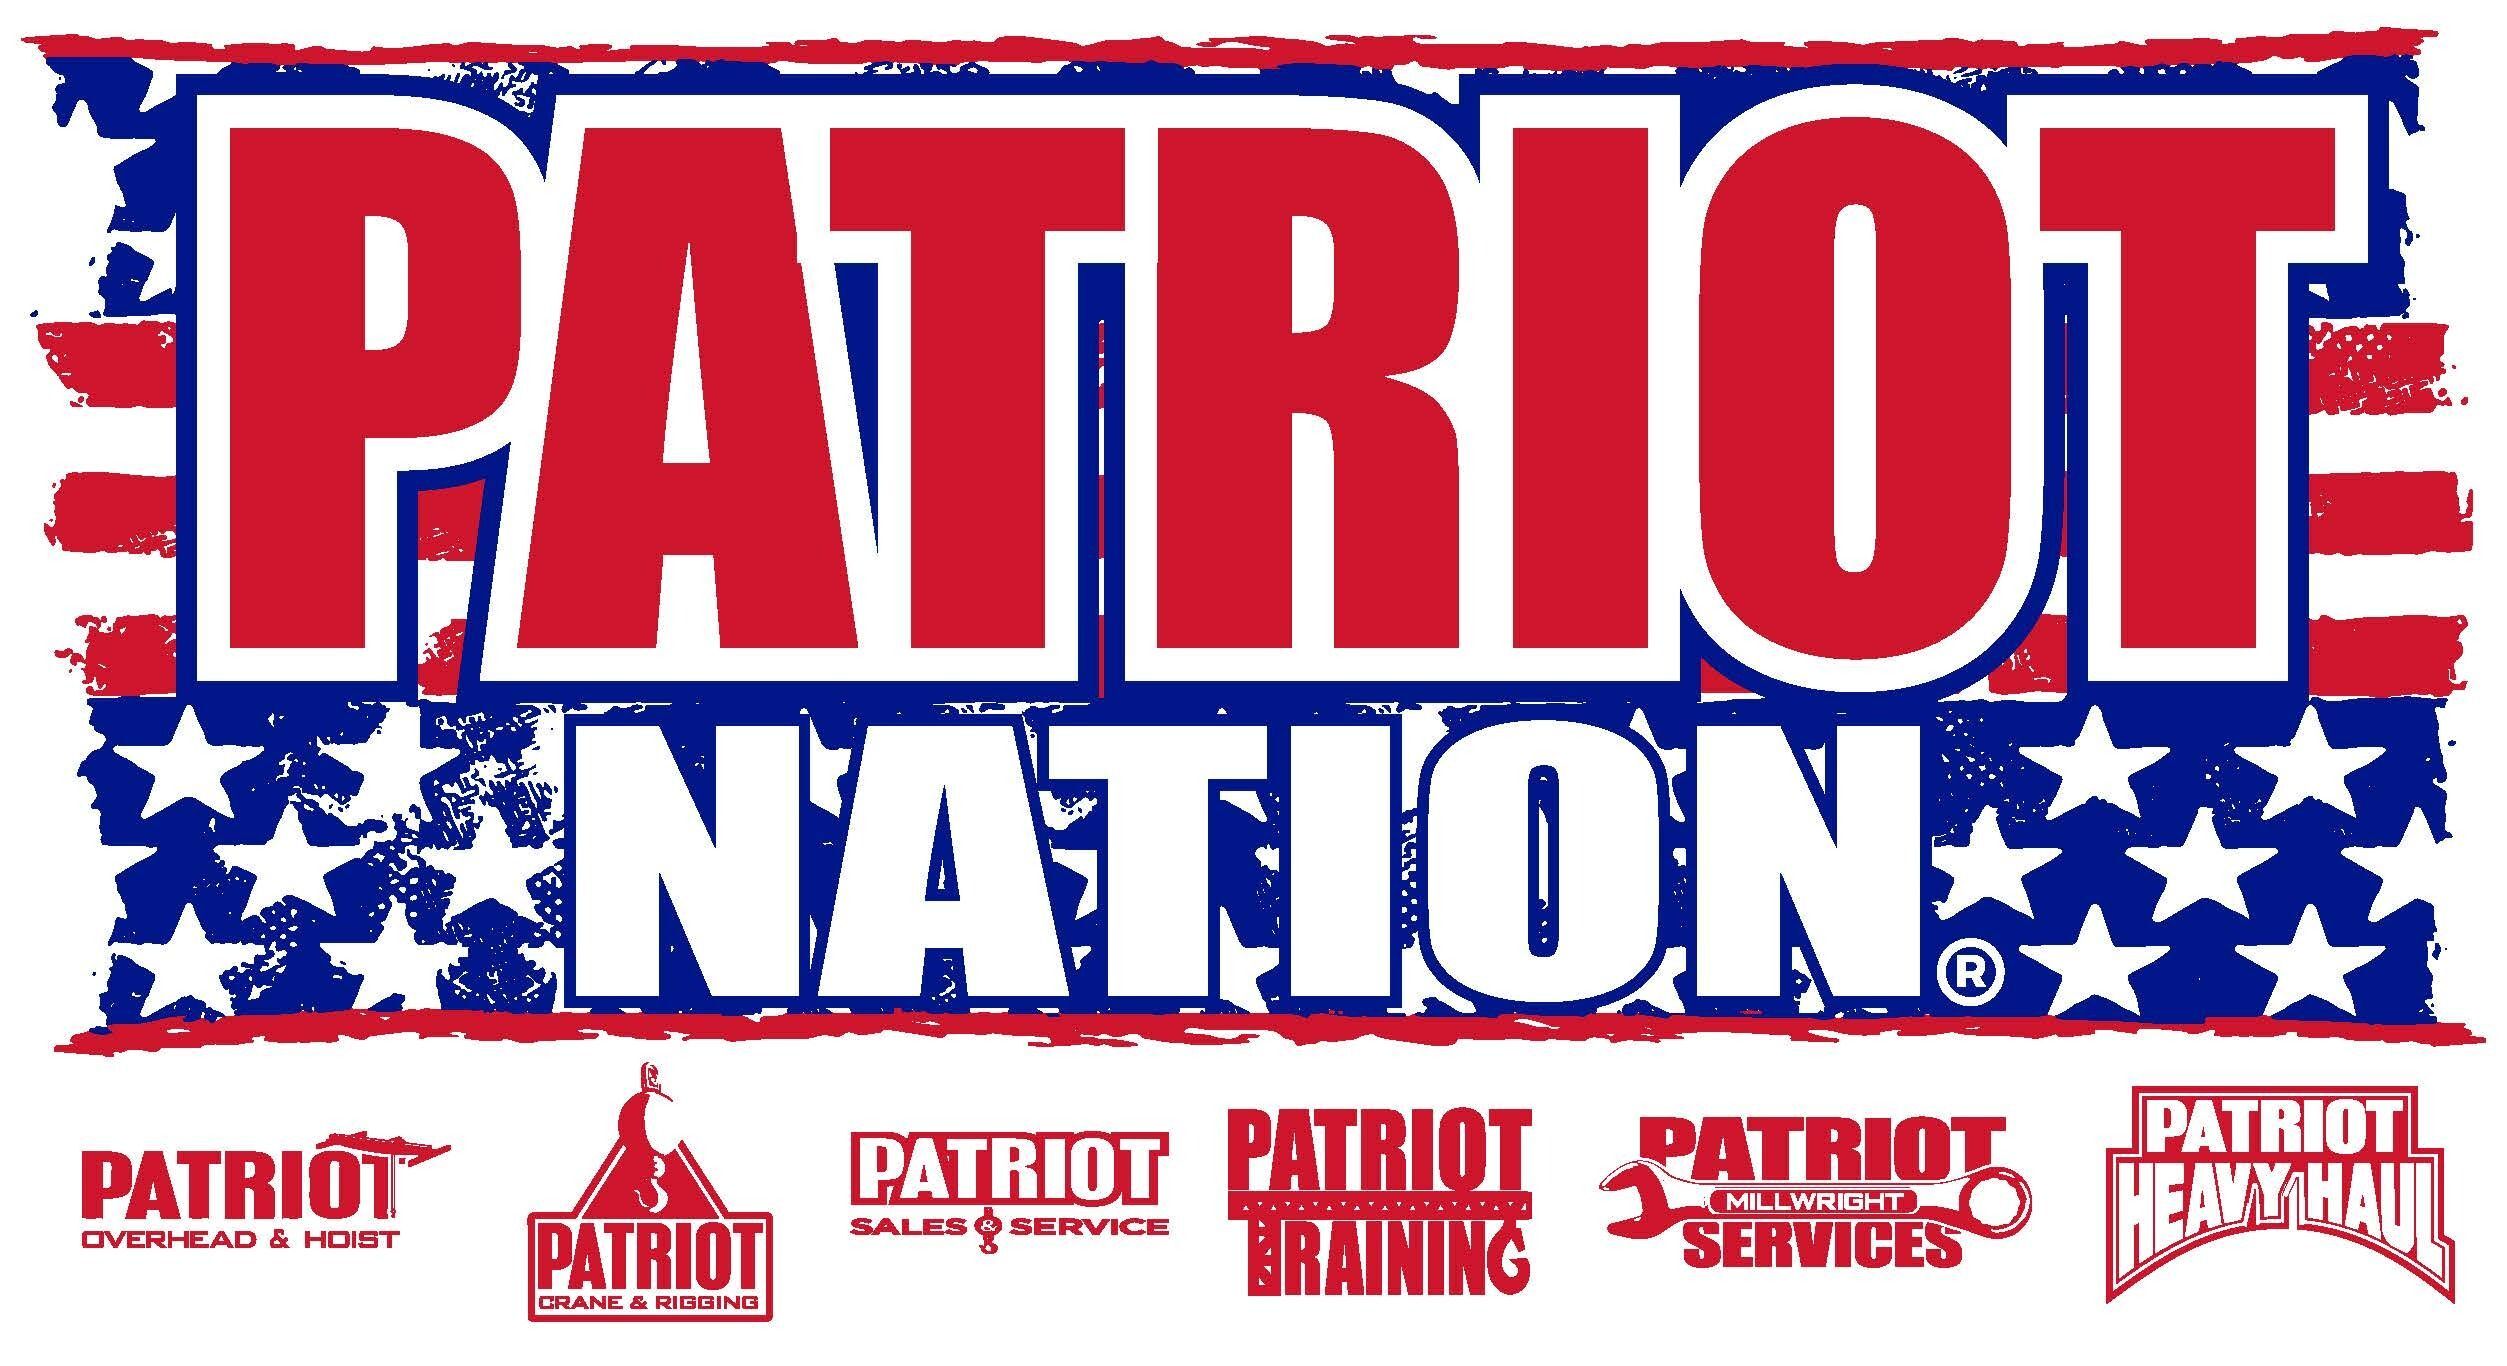 Patriot Nation